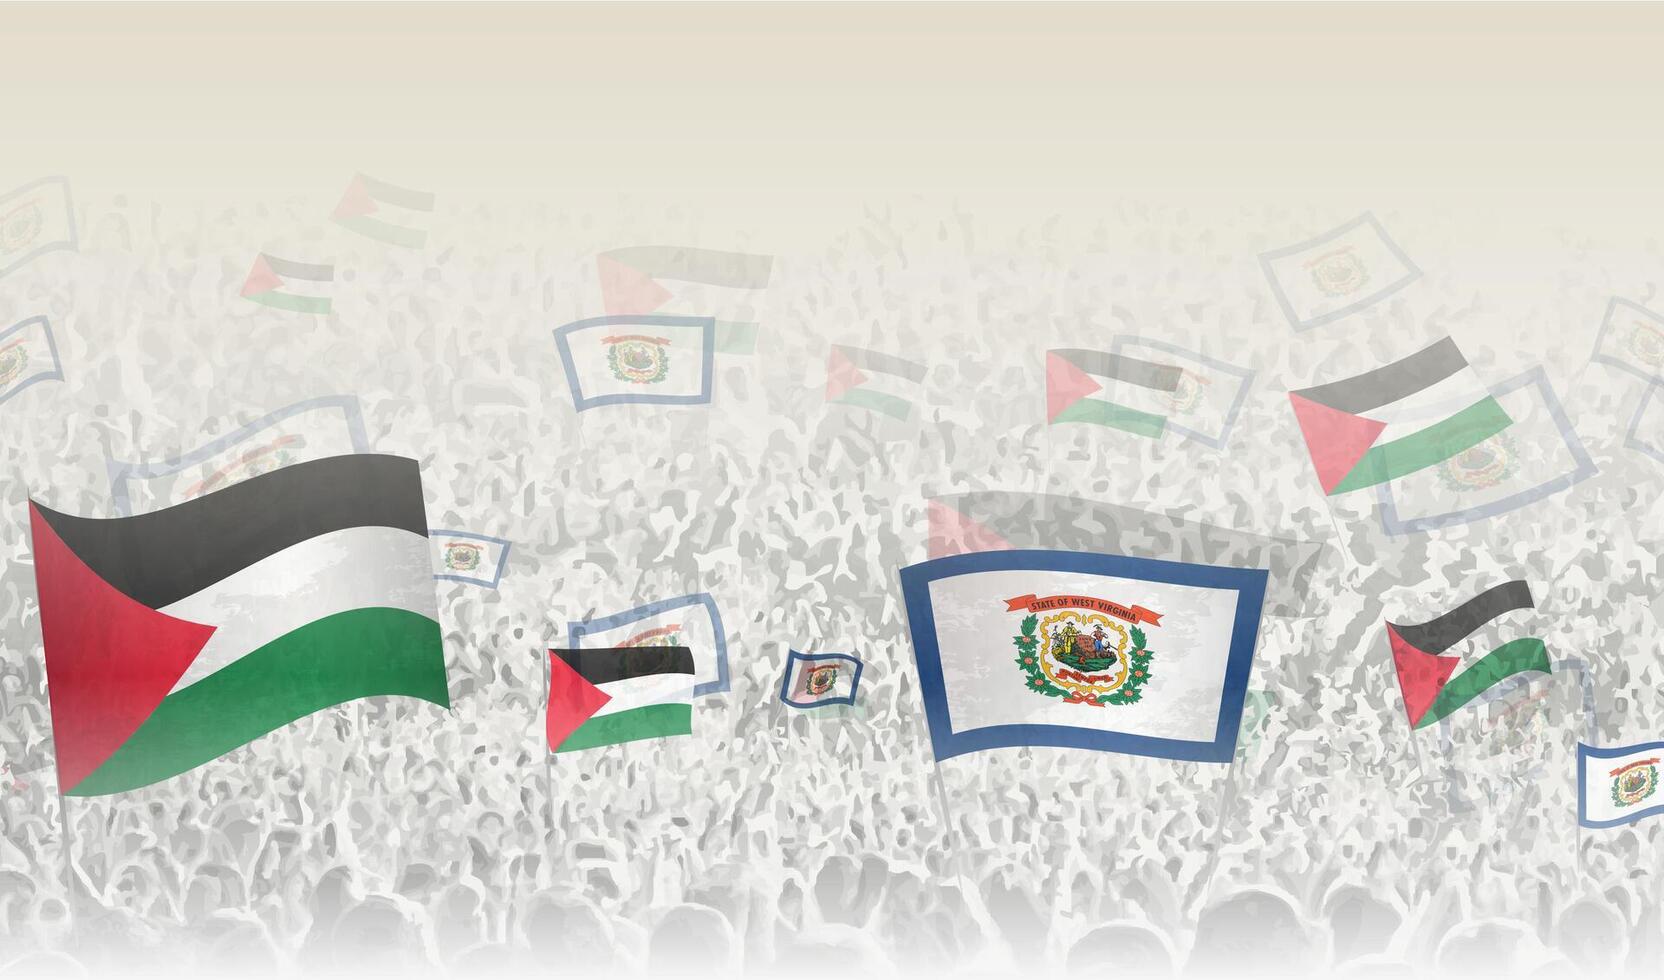 Palästina und Westen Virginia Flaggen im ein Menge von Jubel Personen. vektor